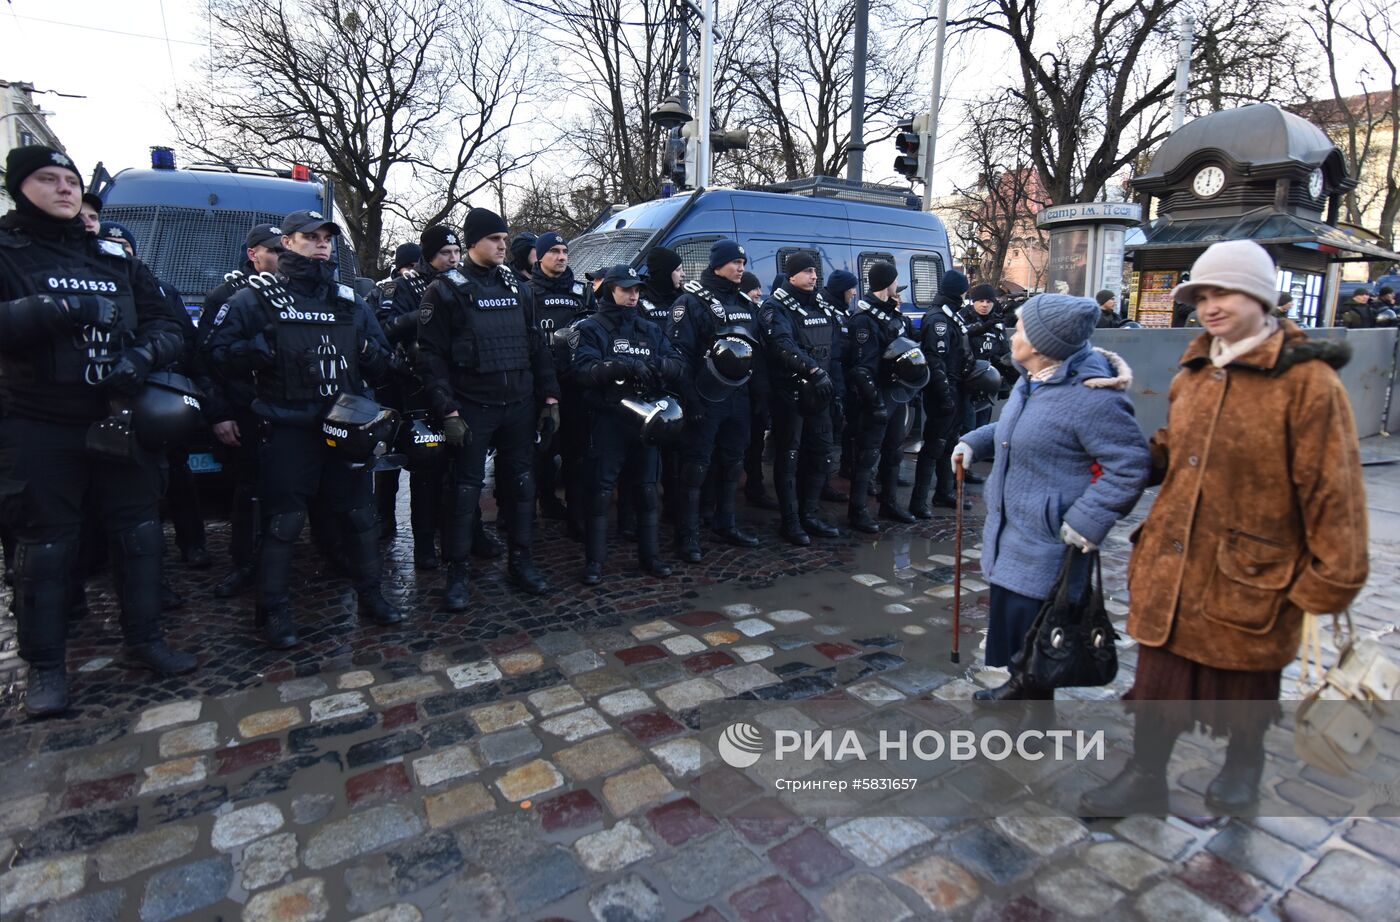 Акция против П. Порошенко во Львове